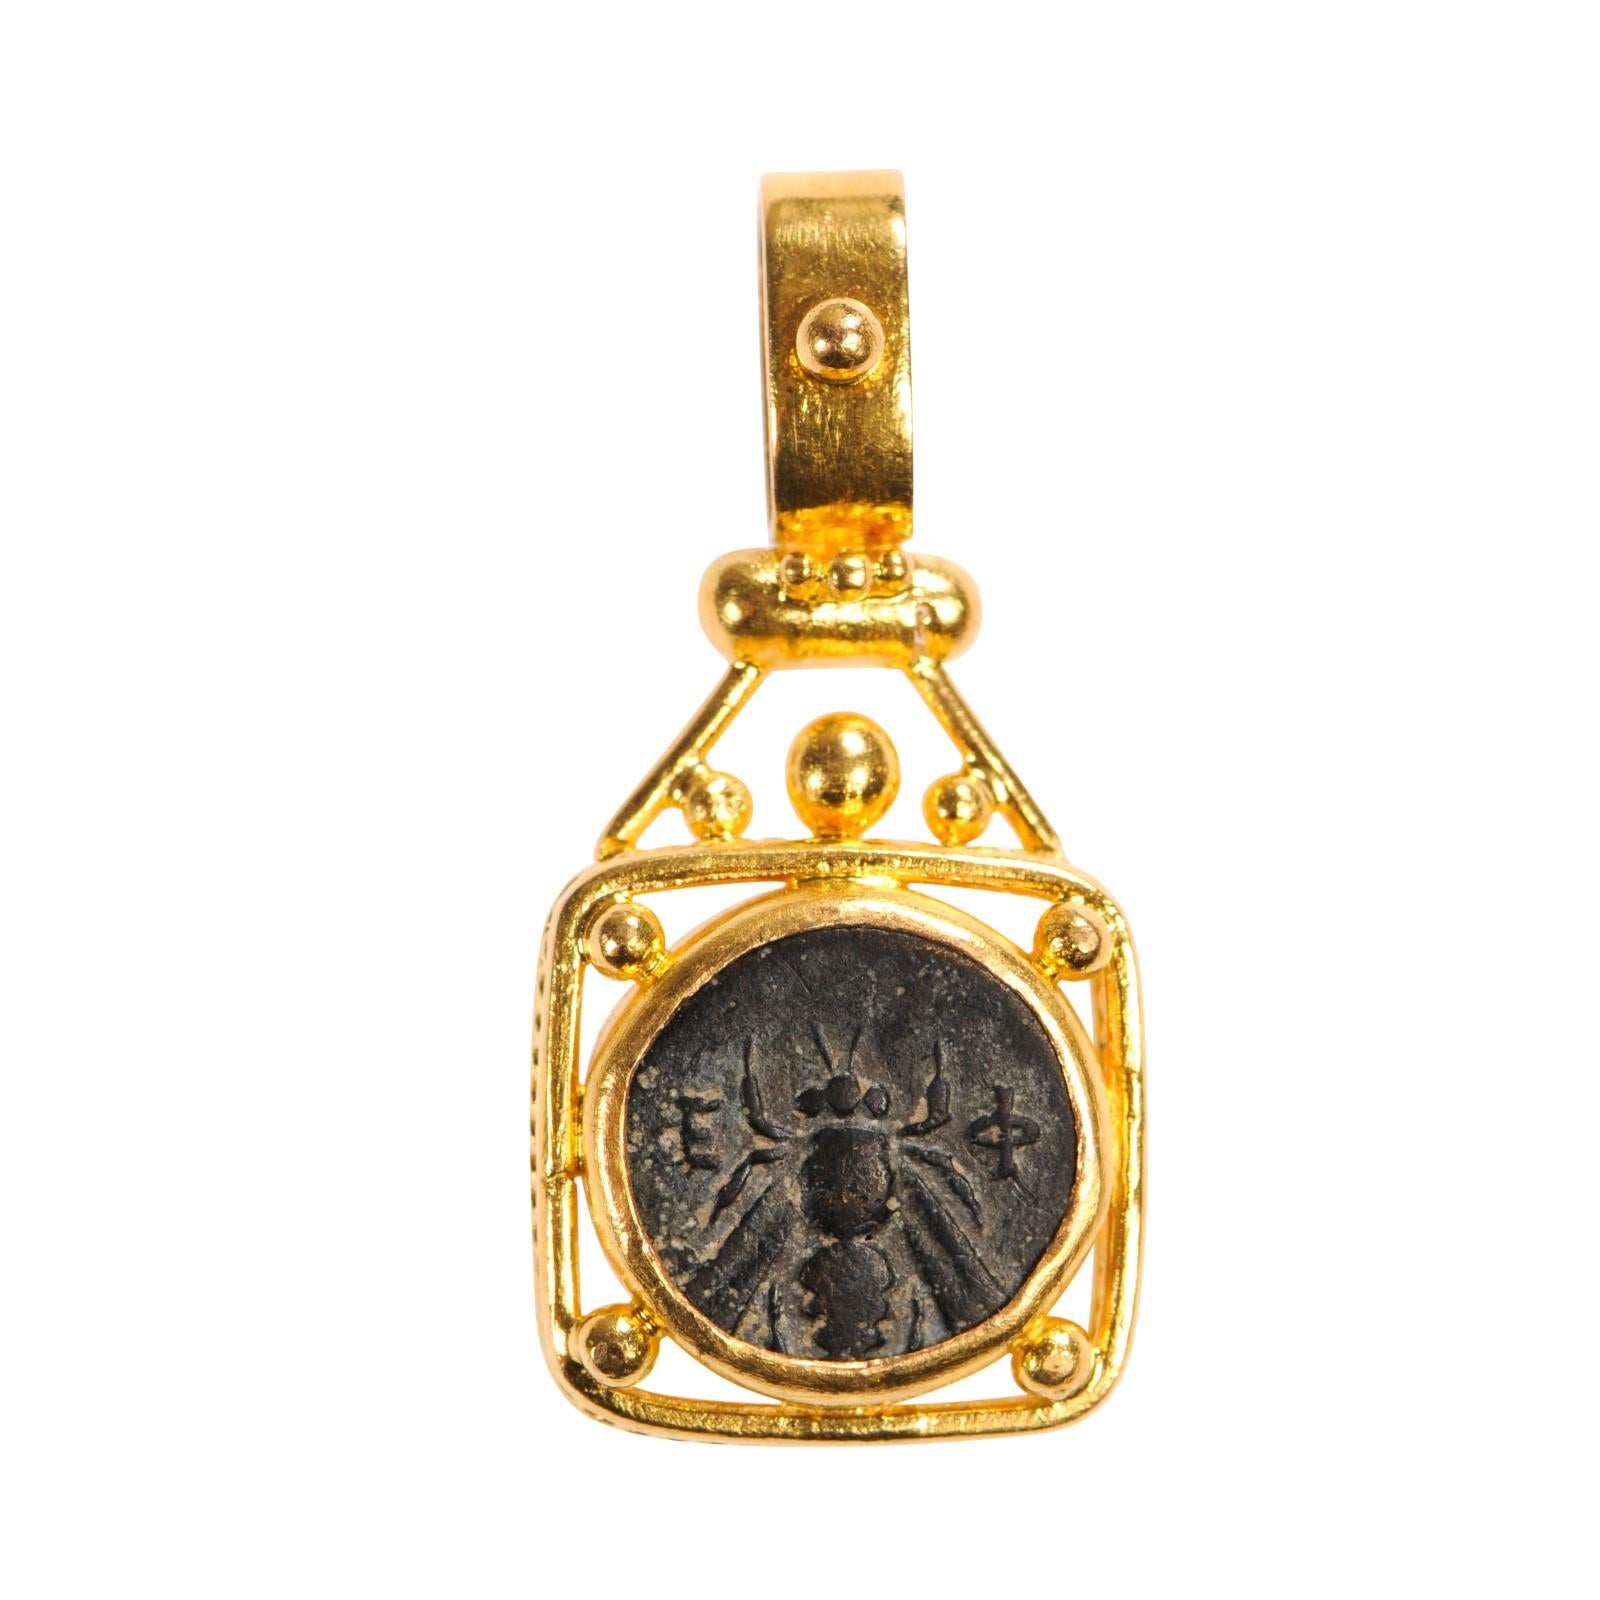 Authentique pièce grecque en bronze, vers 350 - 300 av. J.-C., l'avers représente une abeille et le revers un cerf agenouillé, le tout serti dans un chaton carré en or 22 carats. Le pendentif en forme de pièce de monnaie mesure environ 1 1/3